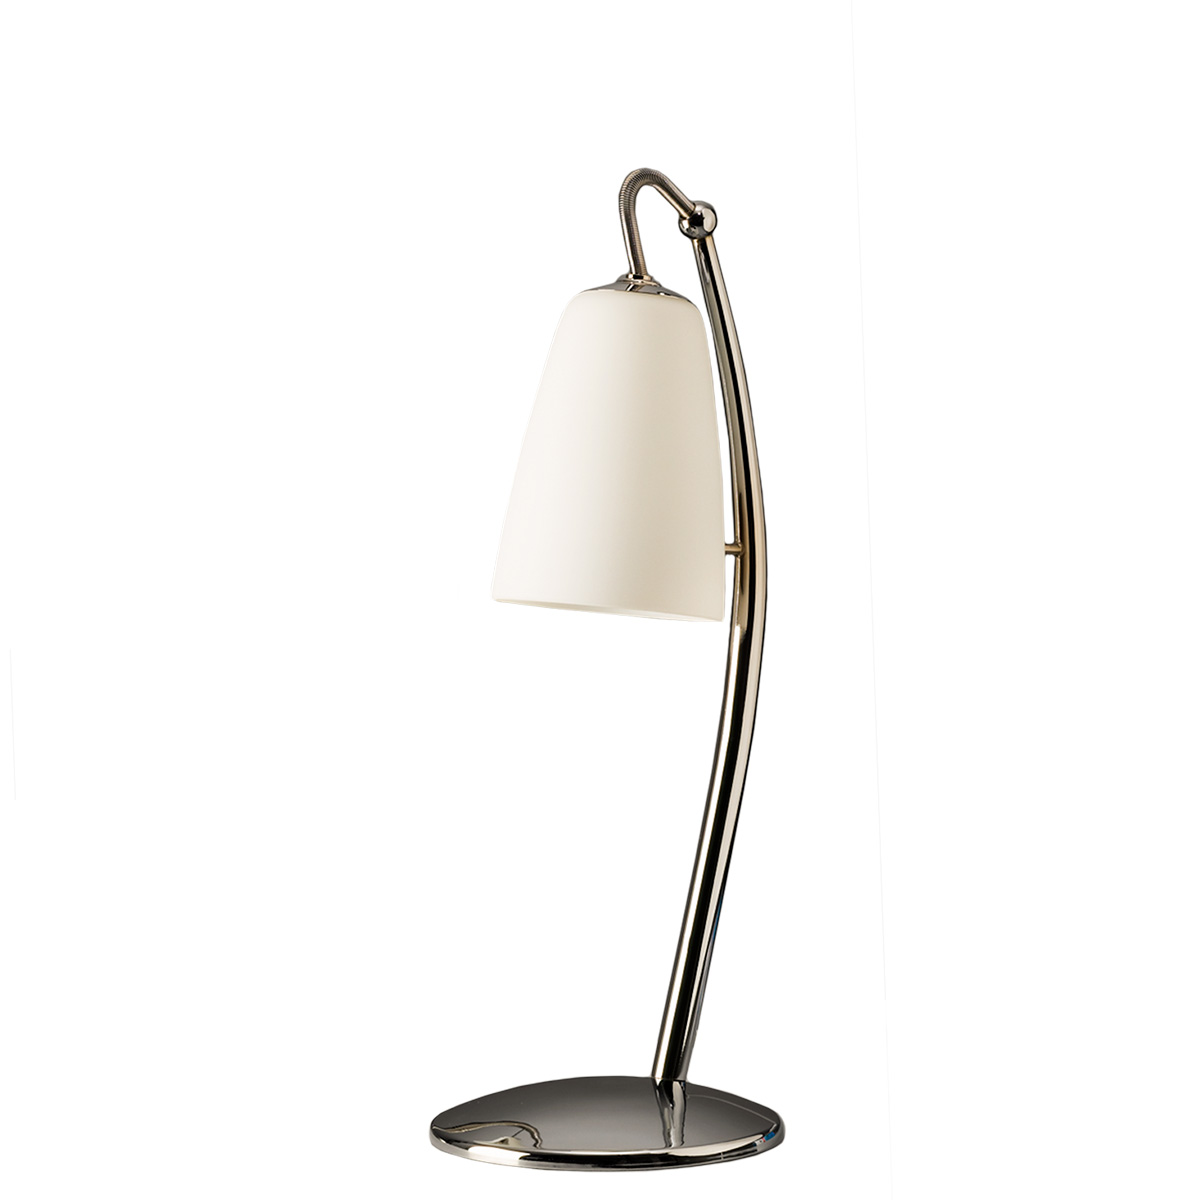 Μοντέρνο επιτραπέζιο φωτιστικό SWING modern table lamp